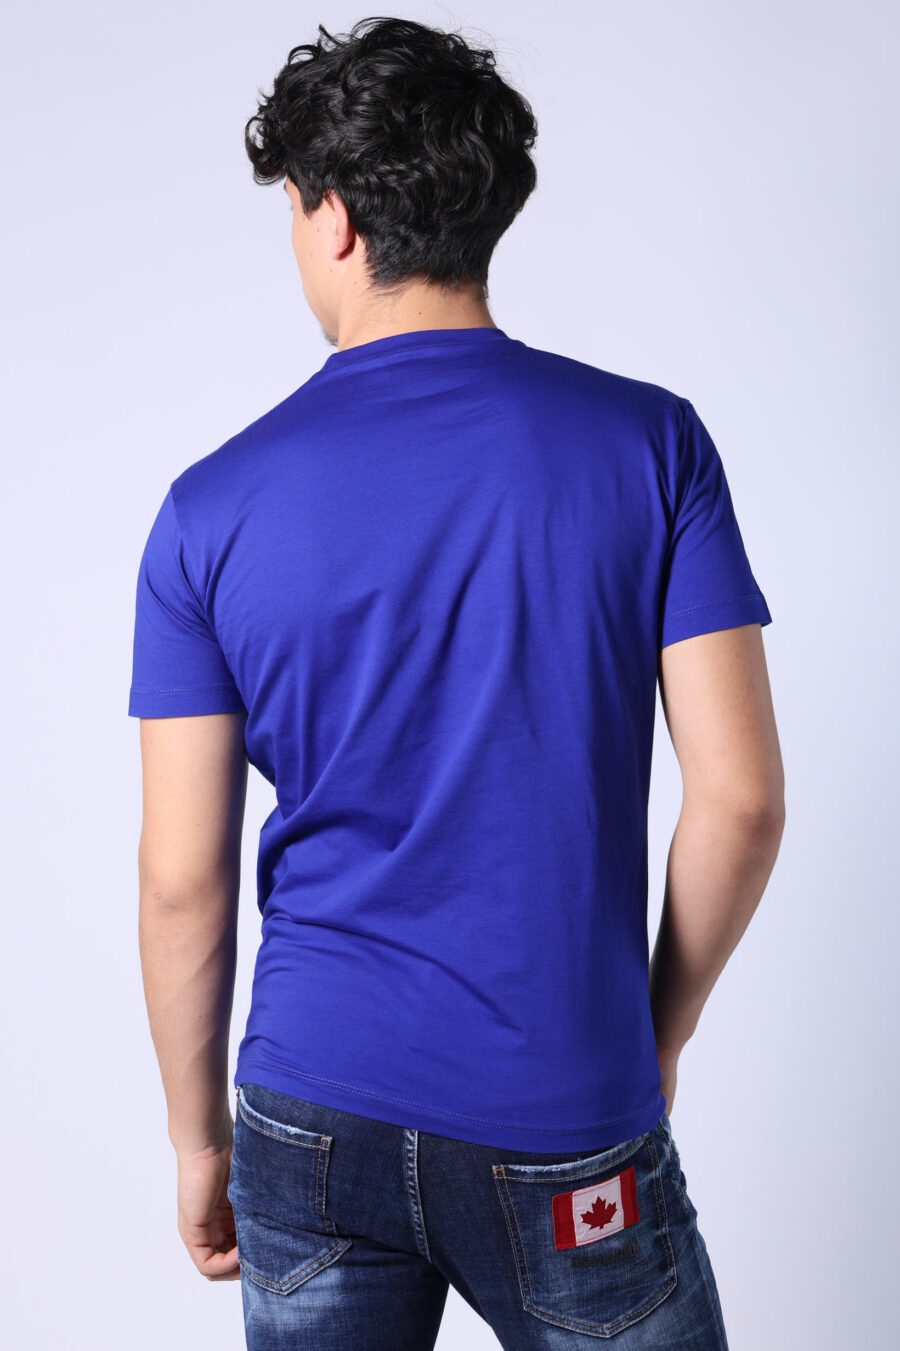 Electric blue t-shirt with white "icon" maxilogo - Untitled Catalog 05401